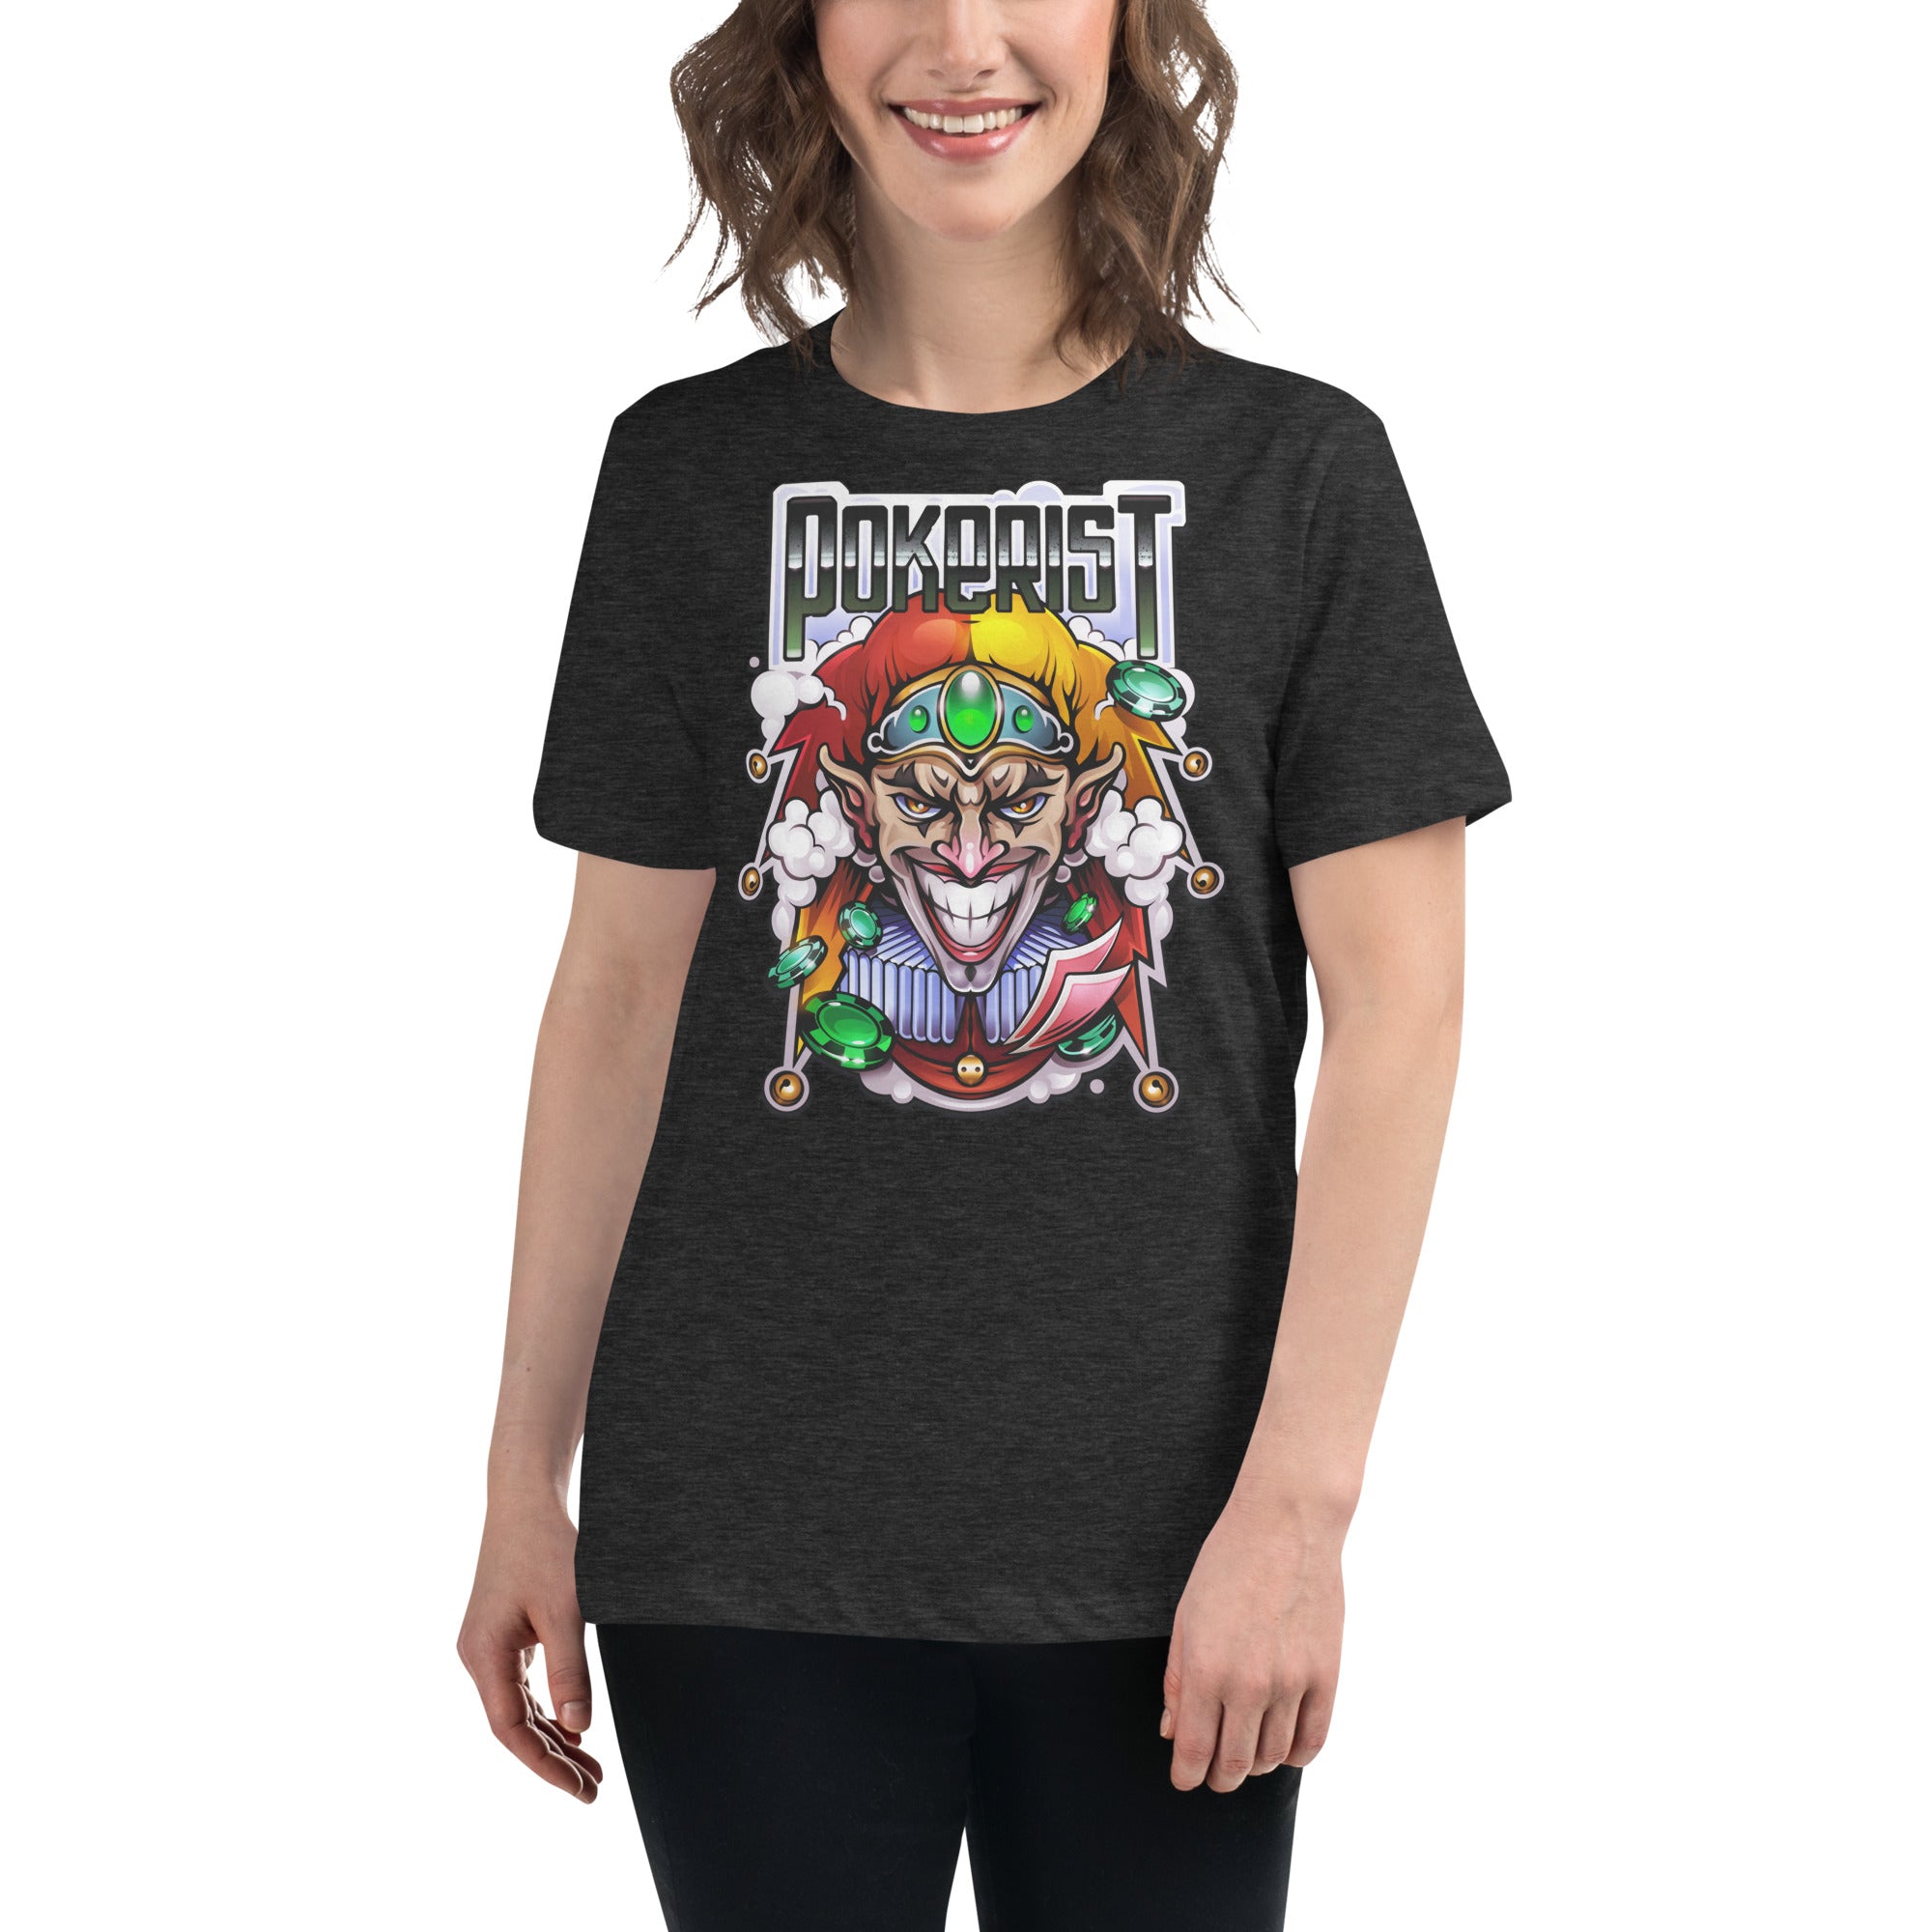 Scary Joker - Women's Relaxed T-Shirt